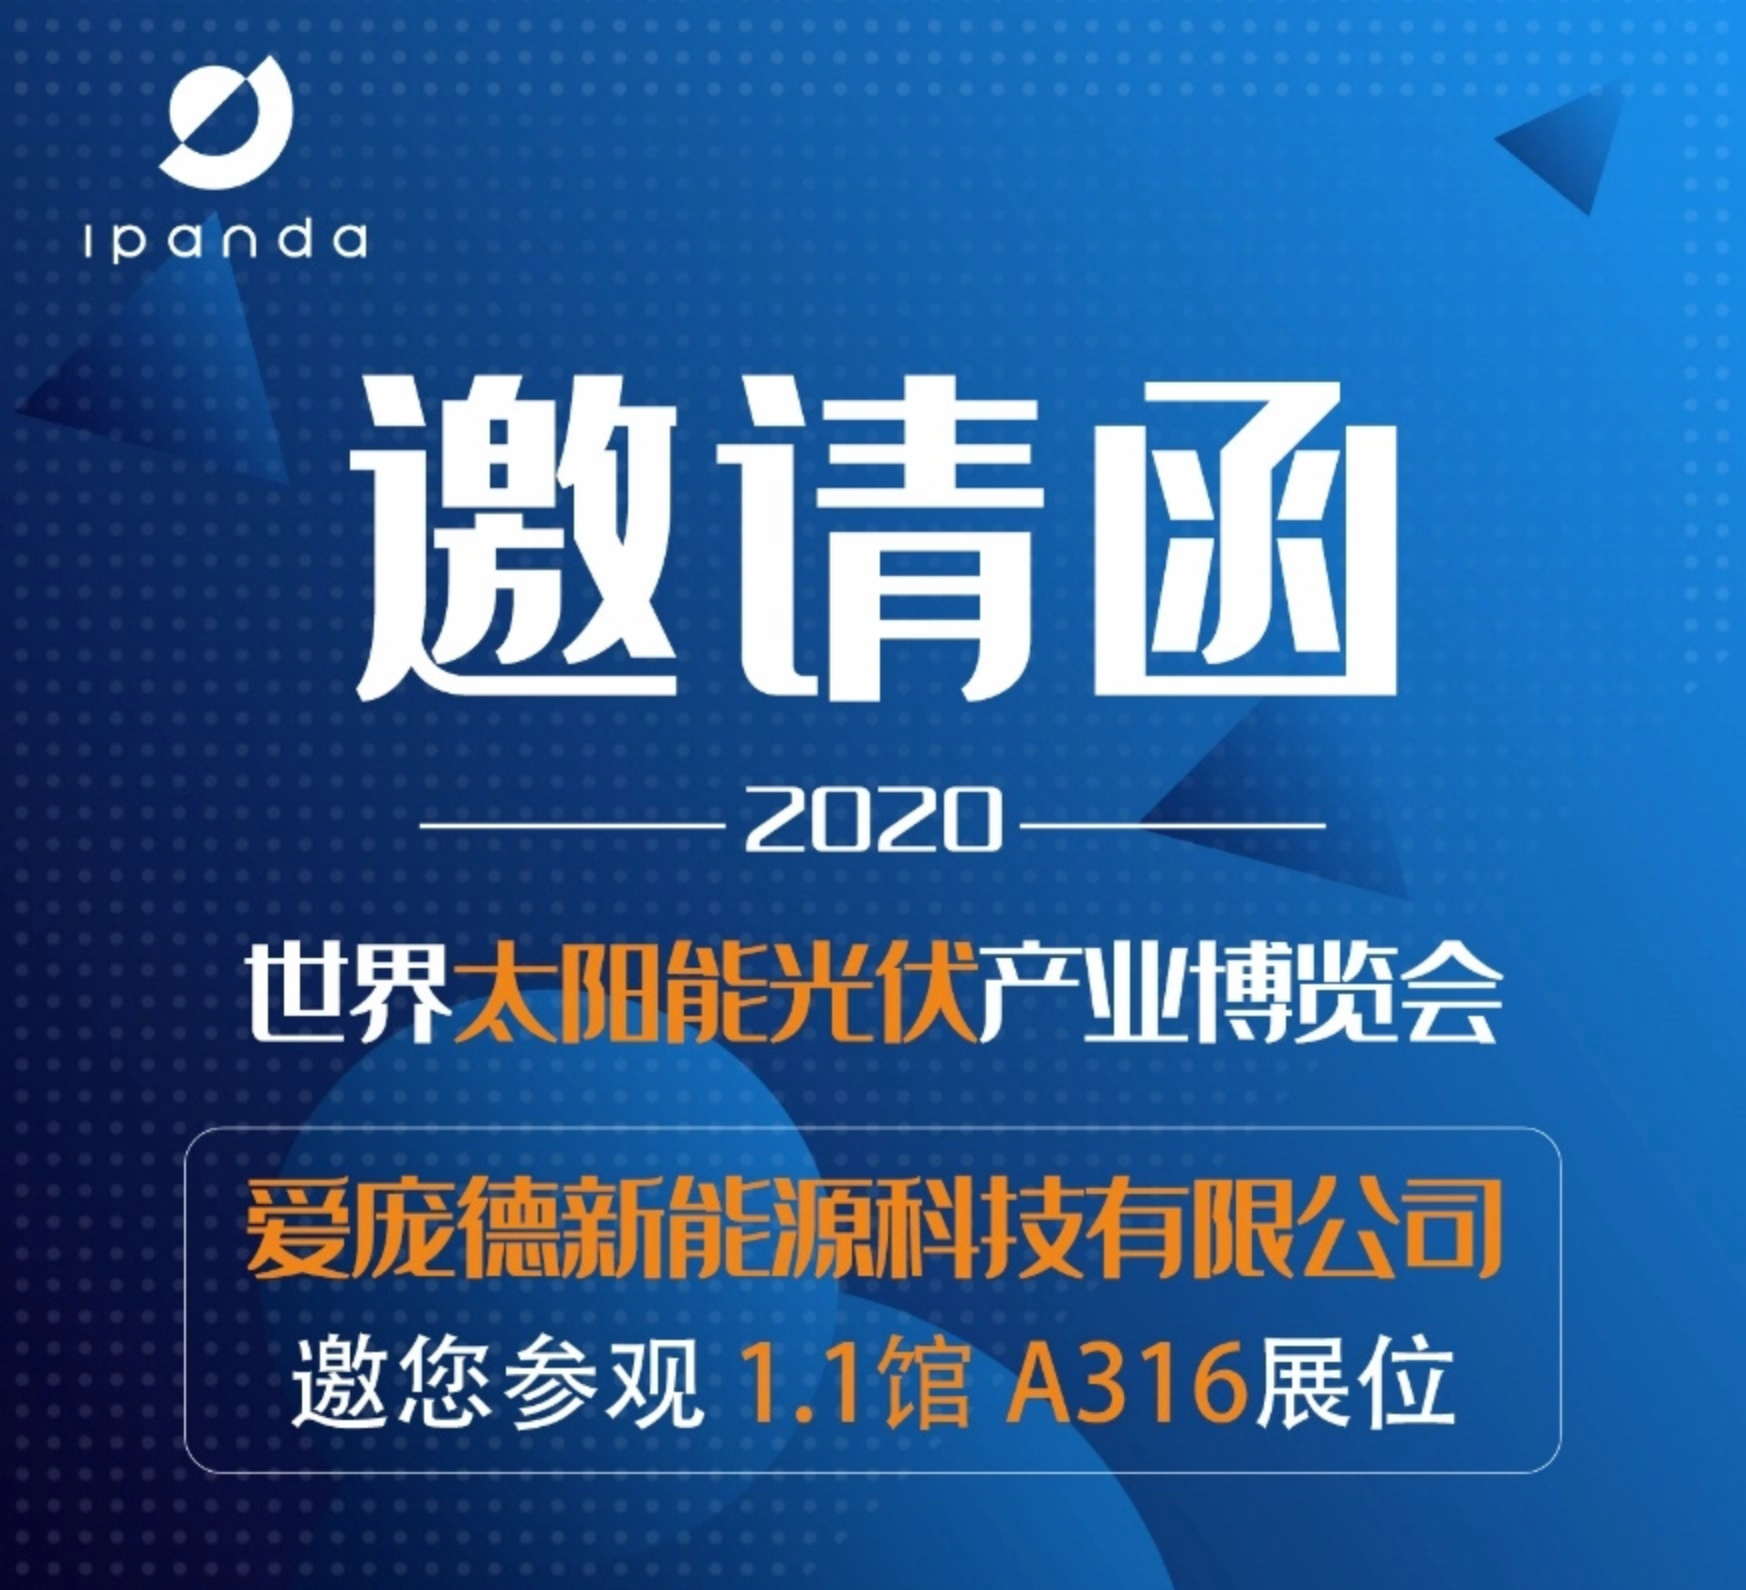 Ipandee i spotkasz się w 2020 roku Guangzhou International Solar PV Exhibition